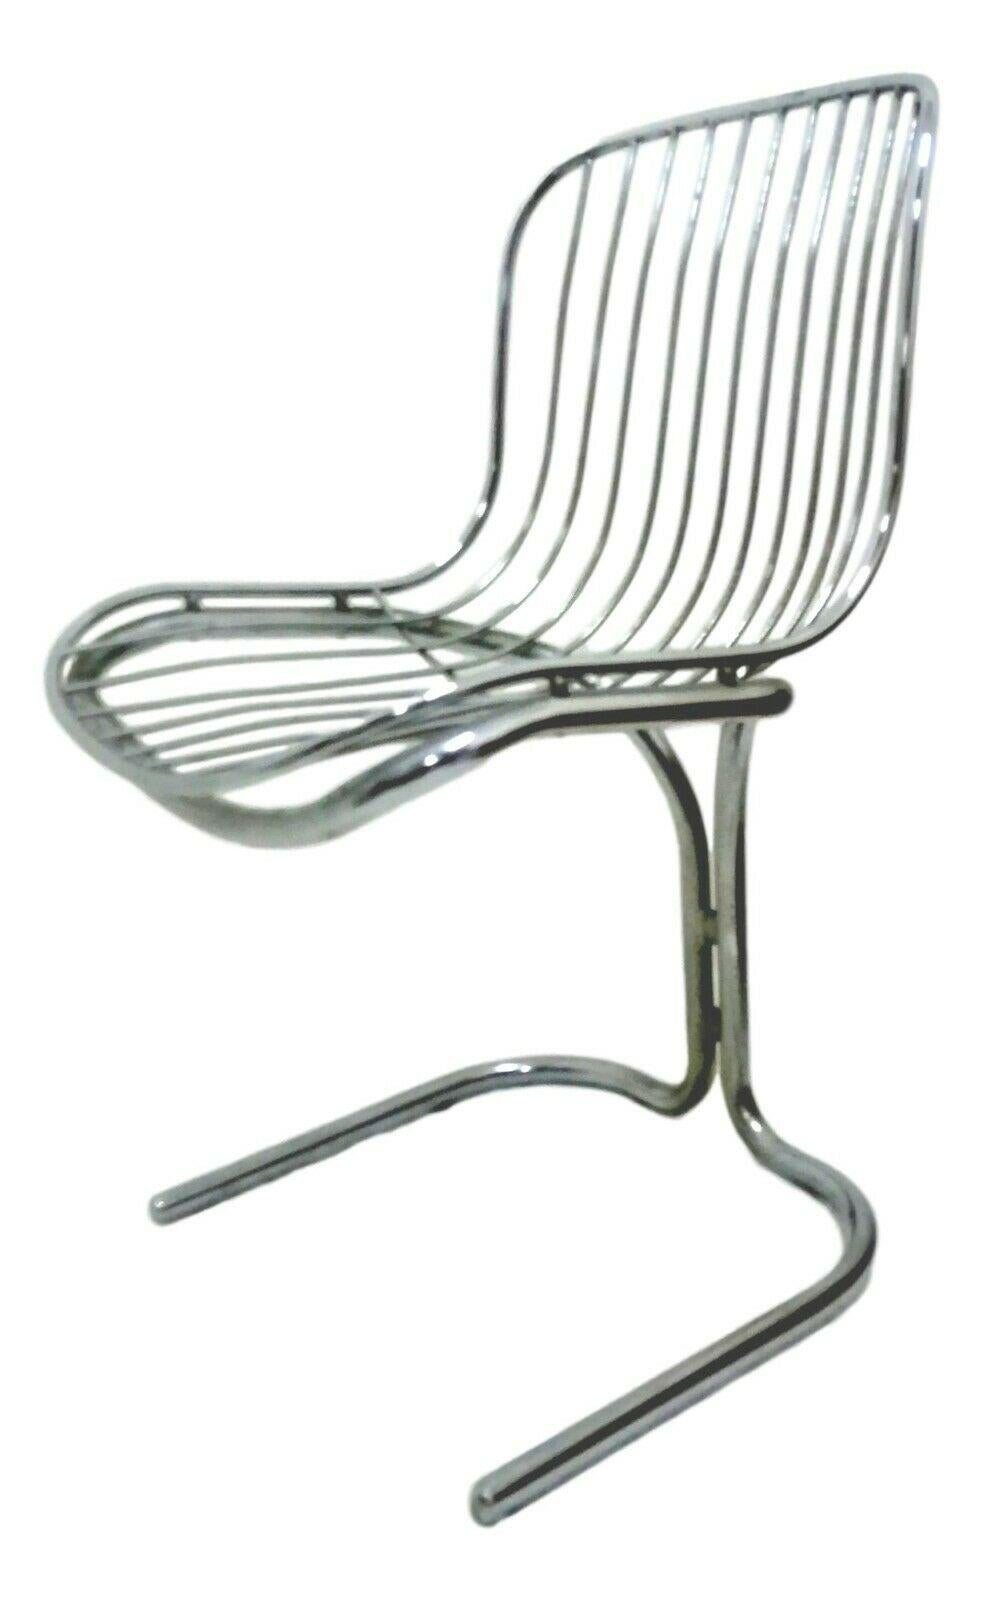 Italian Steel Chair Design Gastone Rinaldi for Rima Padova, 1970s